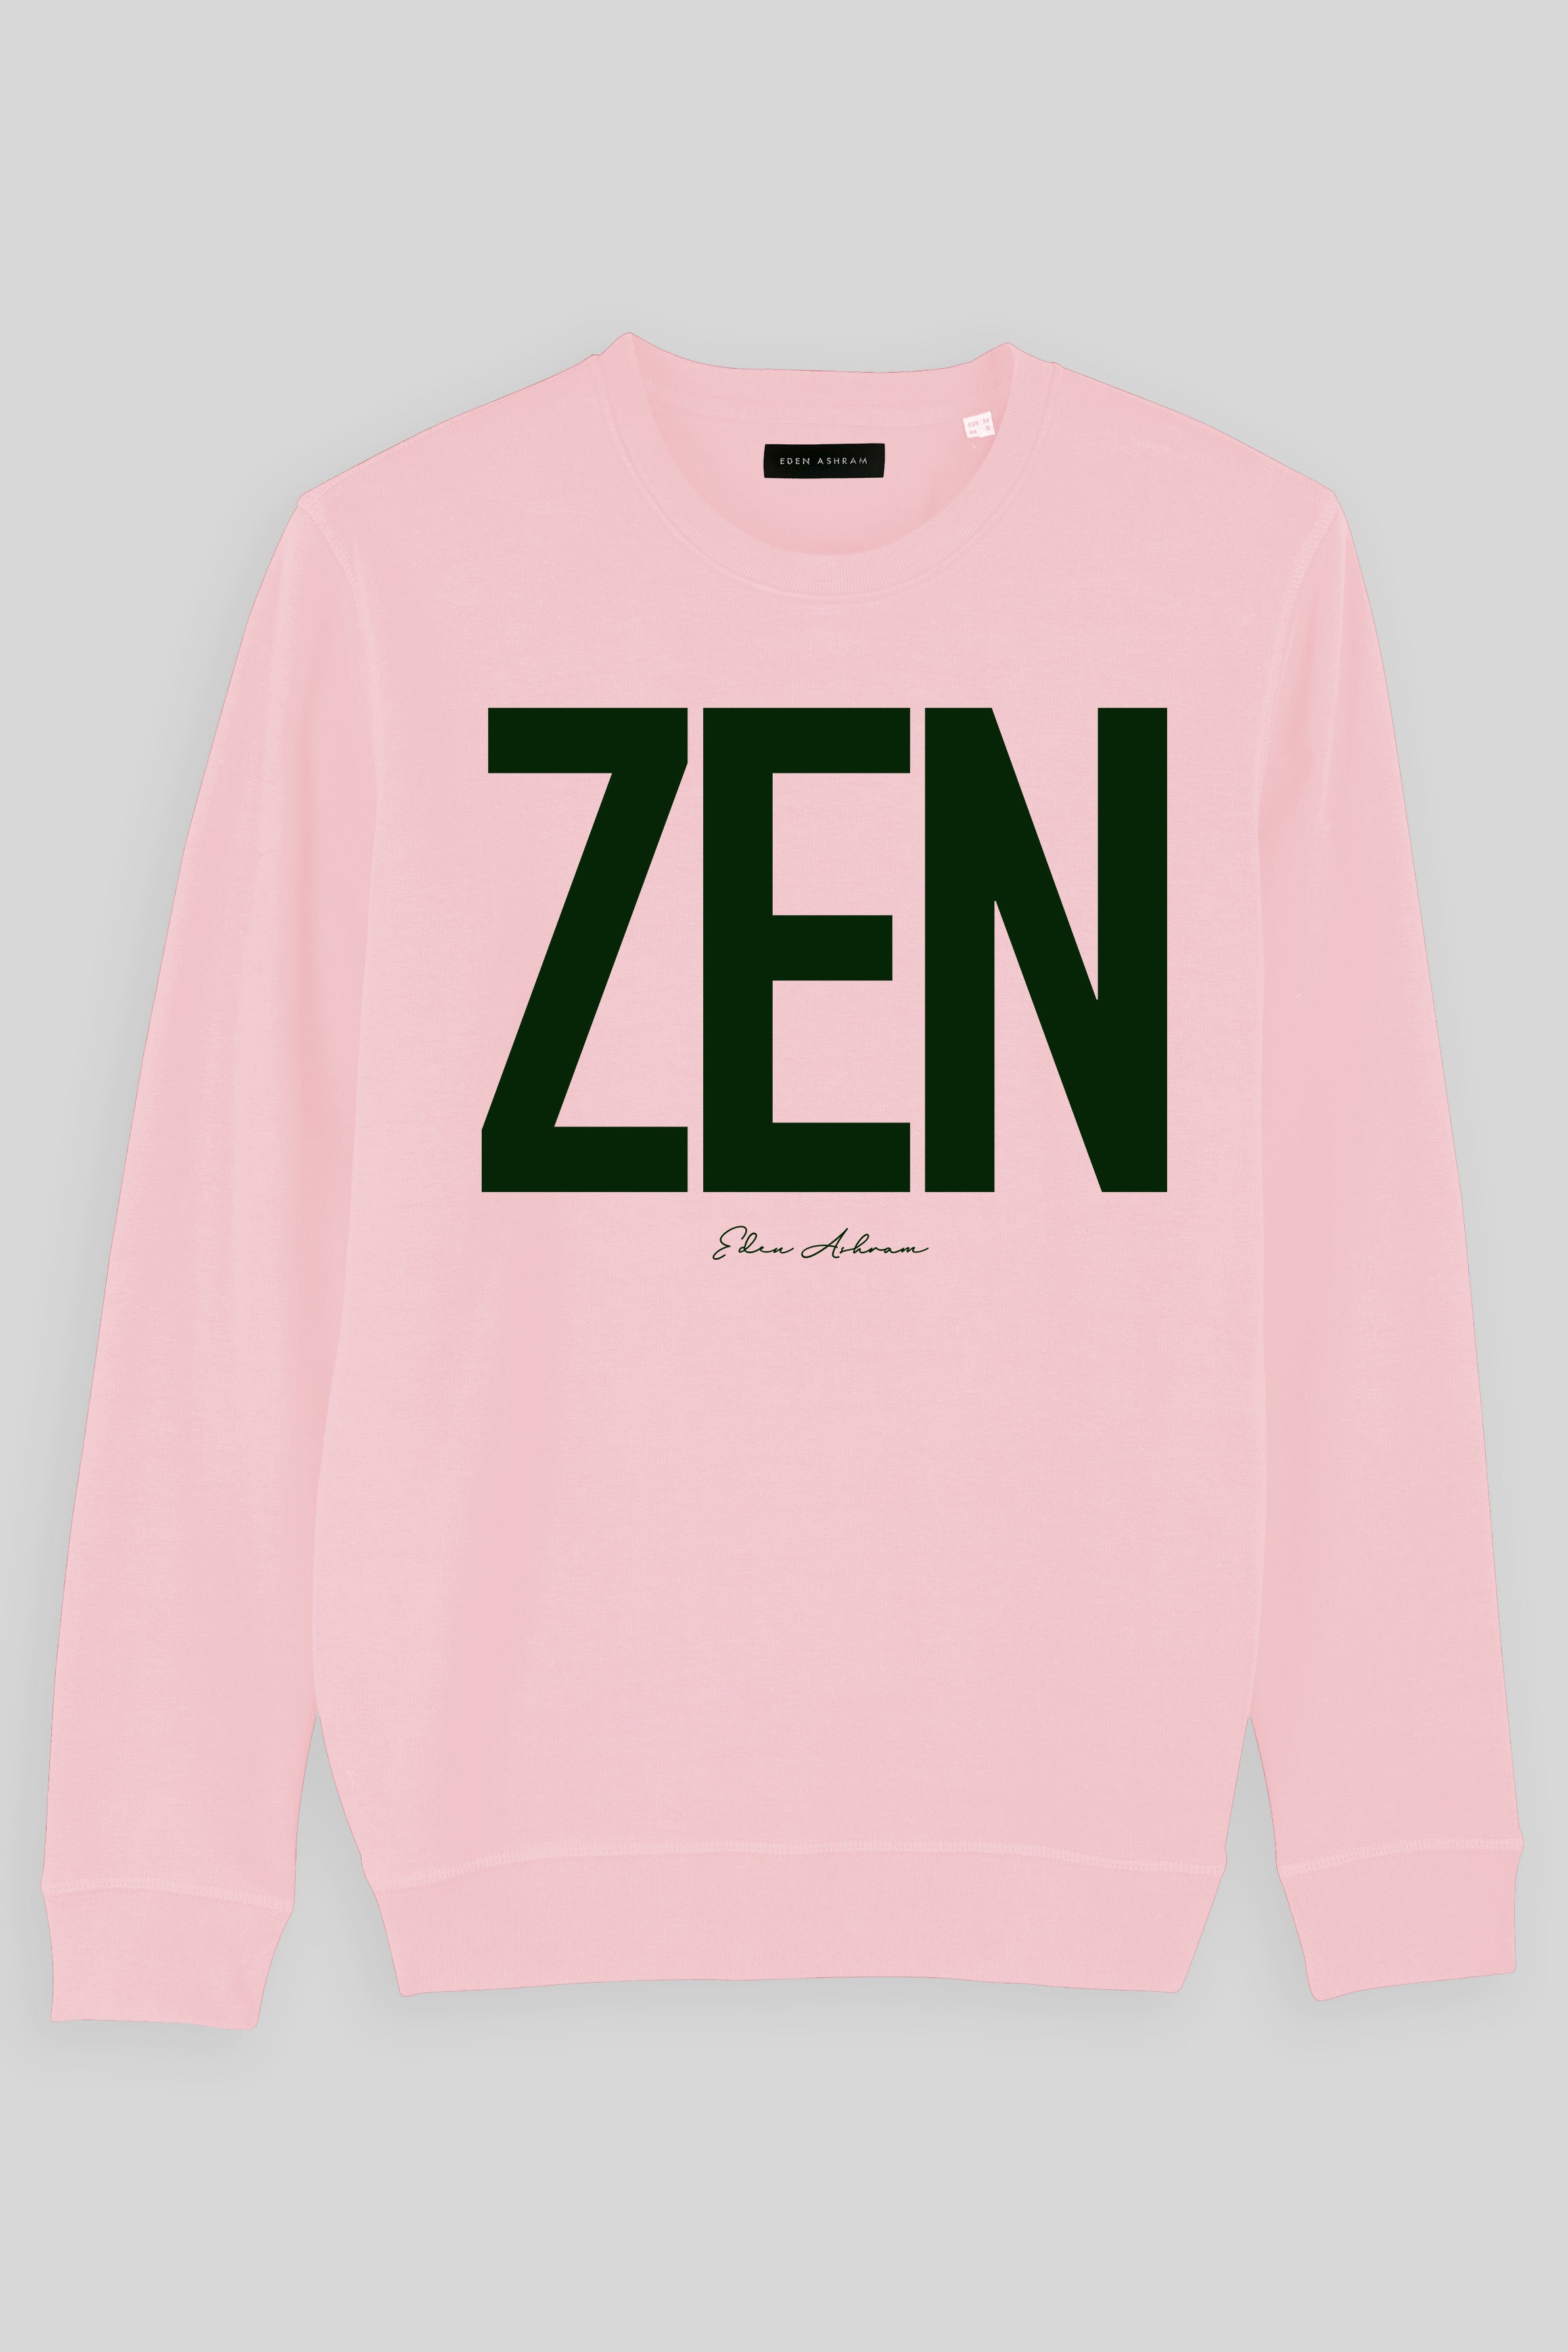 Eden Ashram ZEN Premium Crew Neck Sweatshirt Cotton Pink